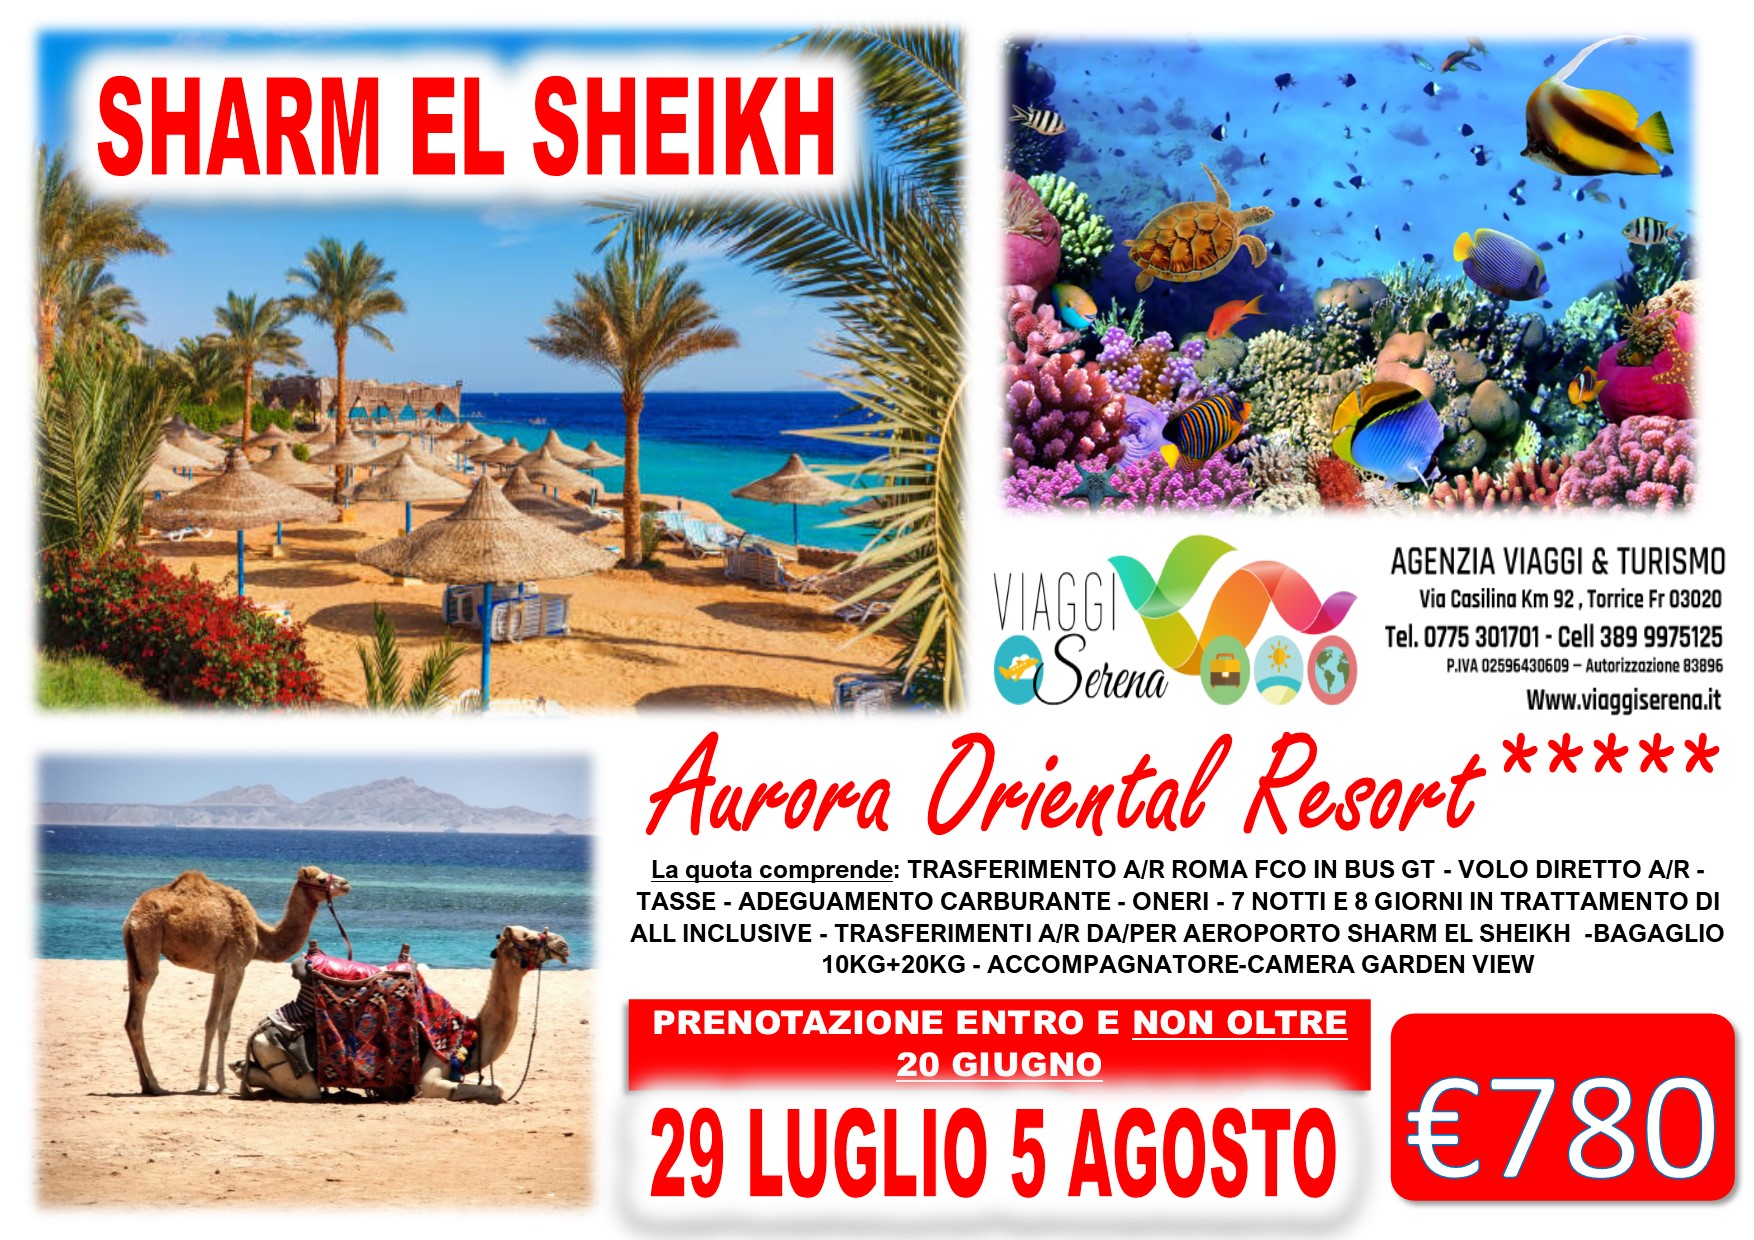 Viaggi di Gruppo: Sharm el Sheikh “Villaggio Aurora Oriental Resort” 29 Luglio 5 Agosto €780,00